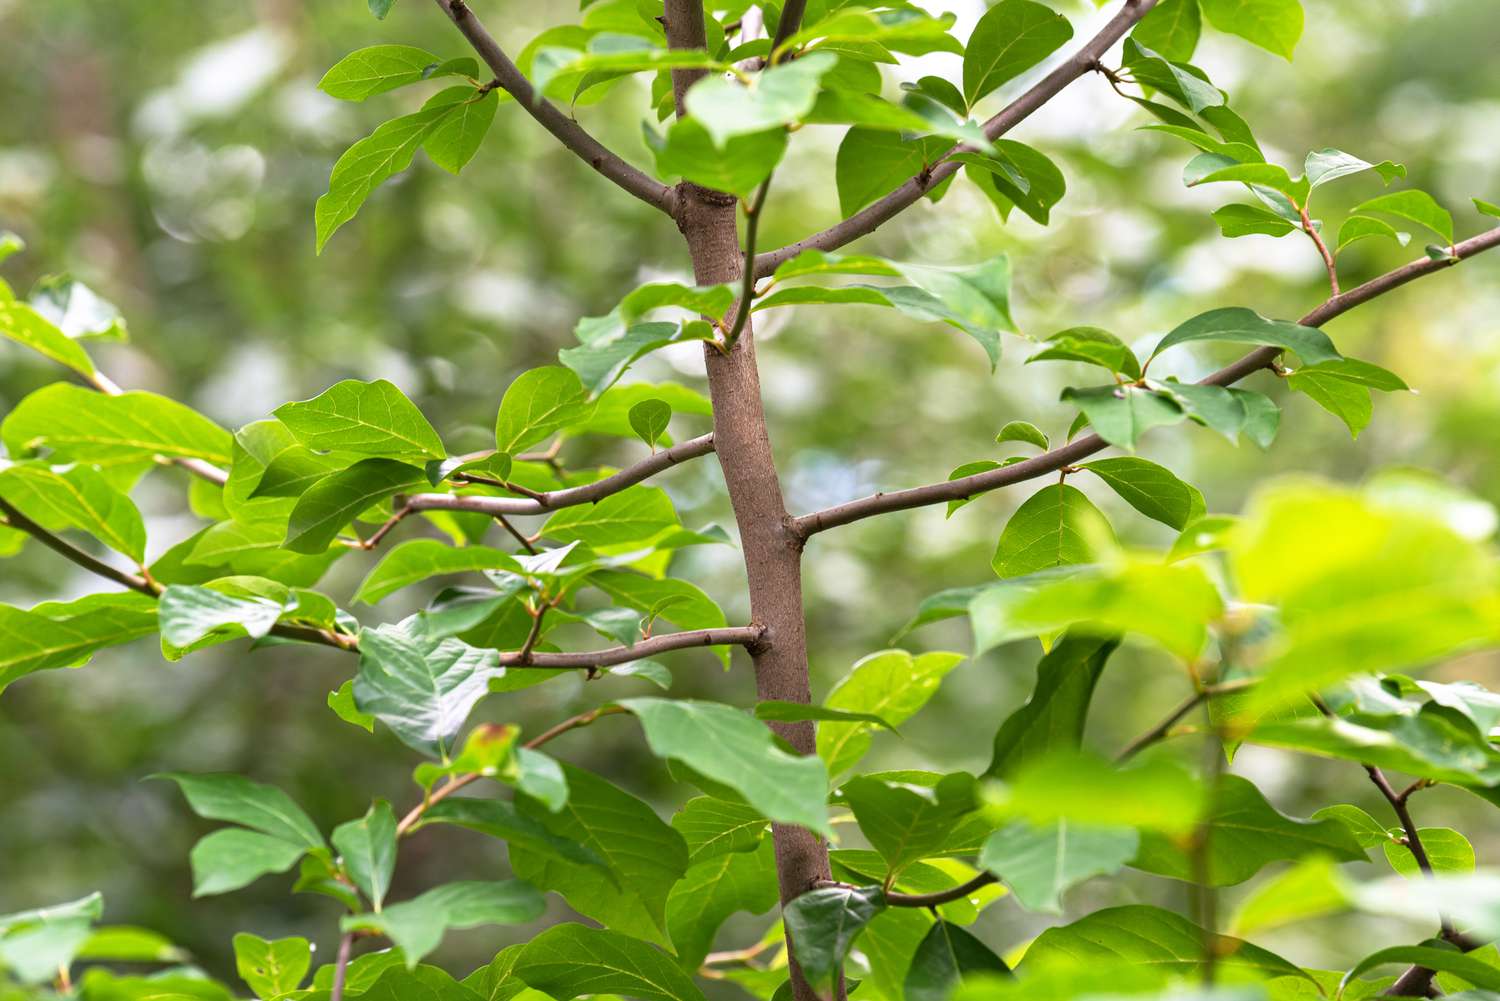 Gommier noir avec tronc fin brun clair et feuilles vertes brillantes gros plan